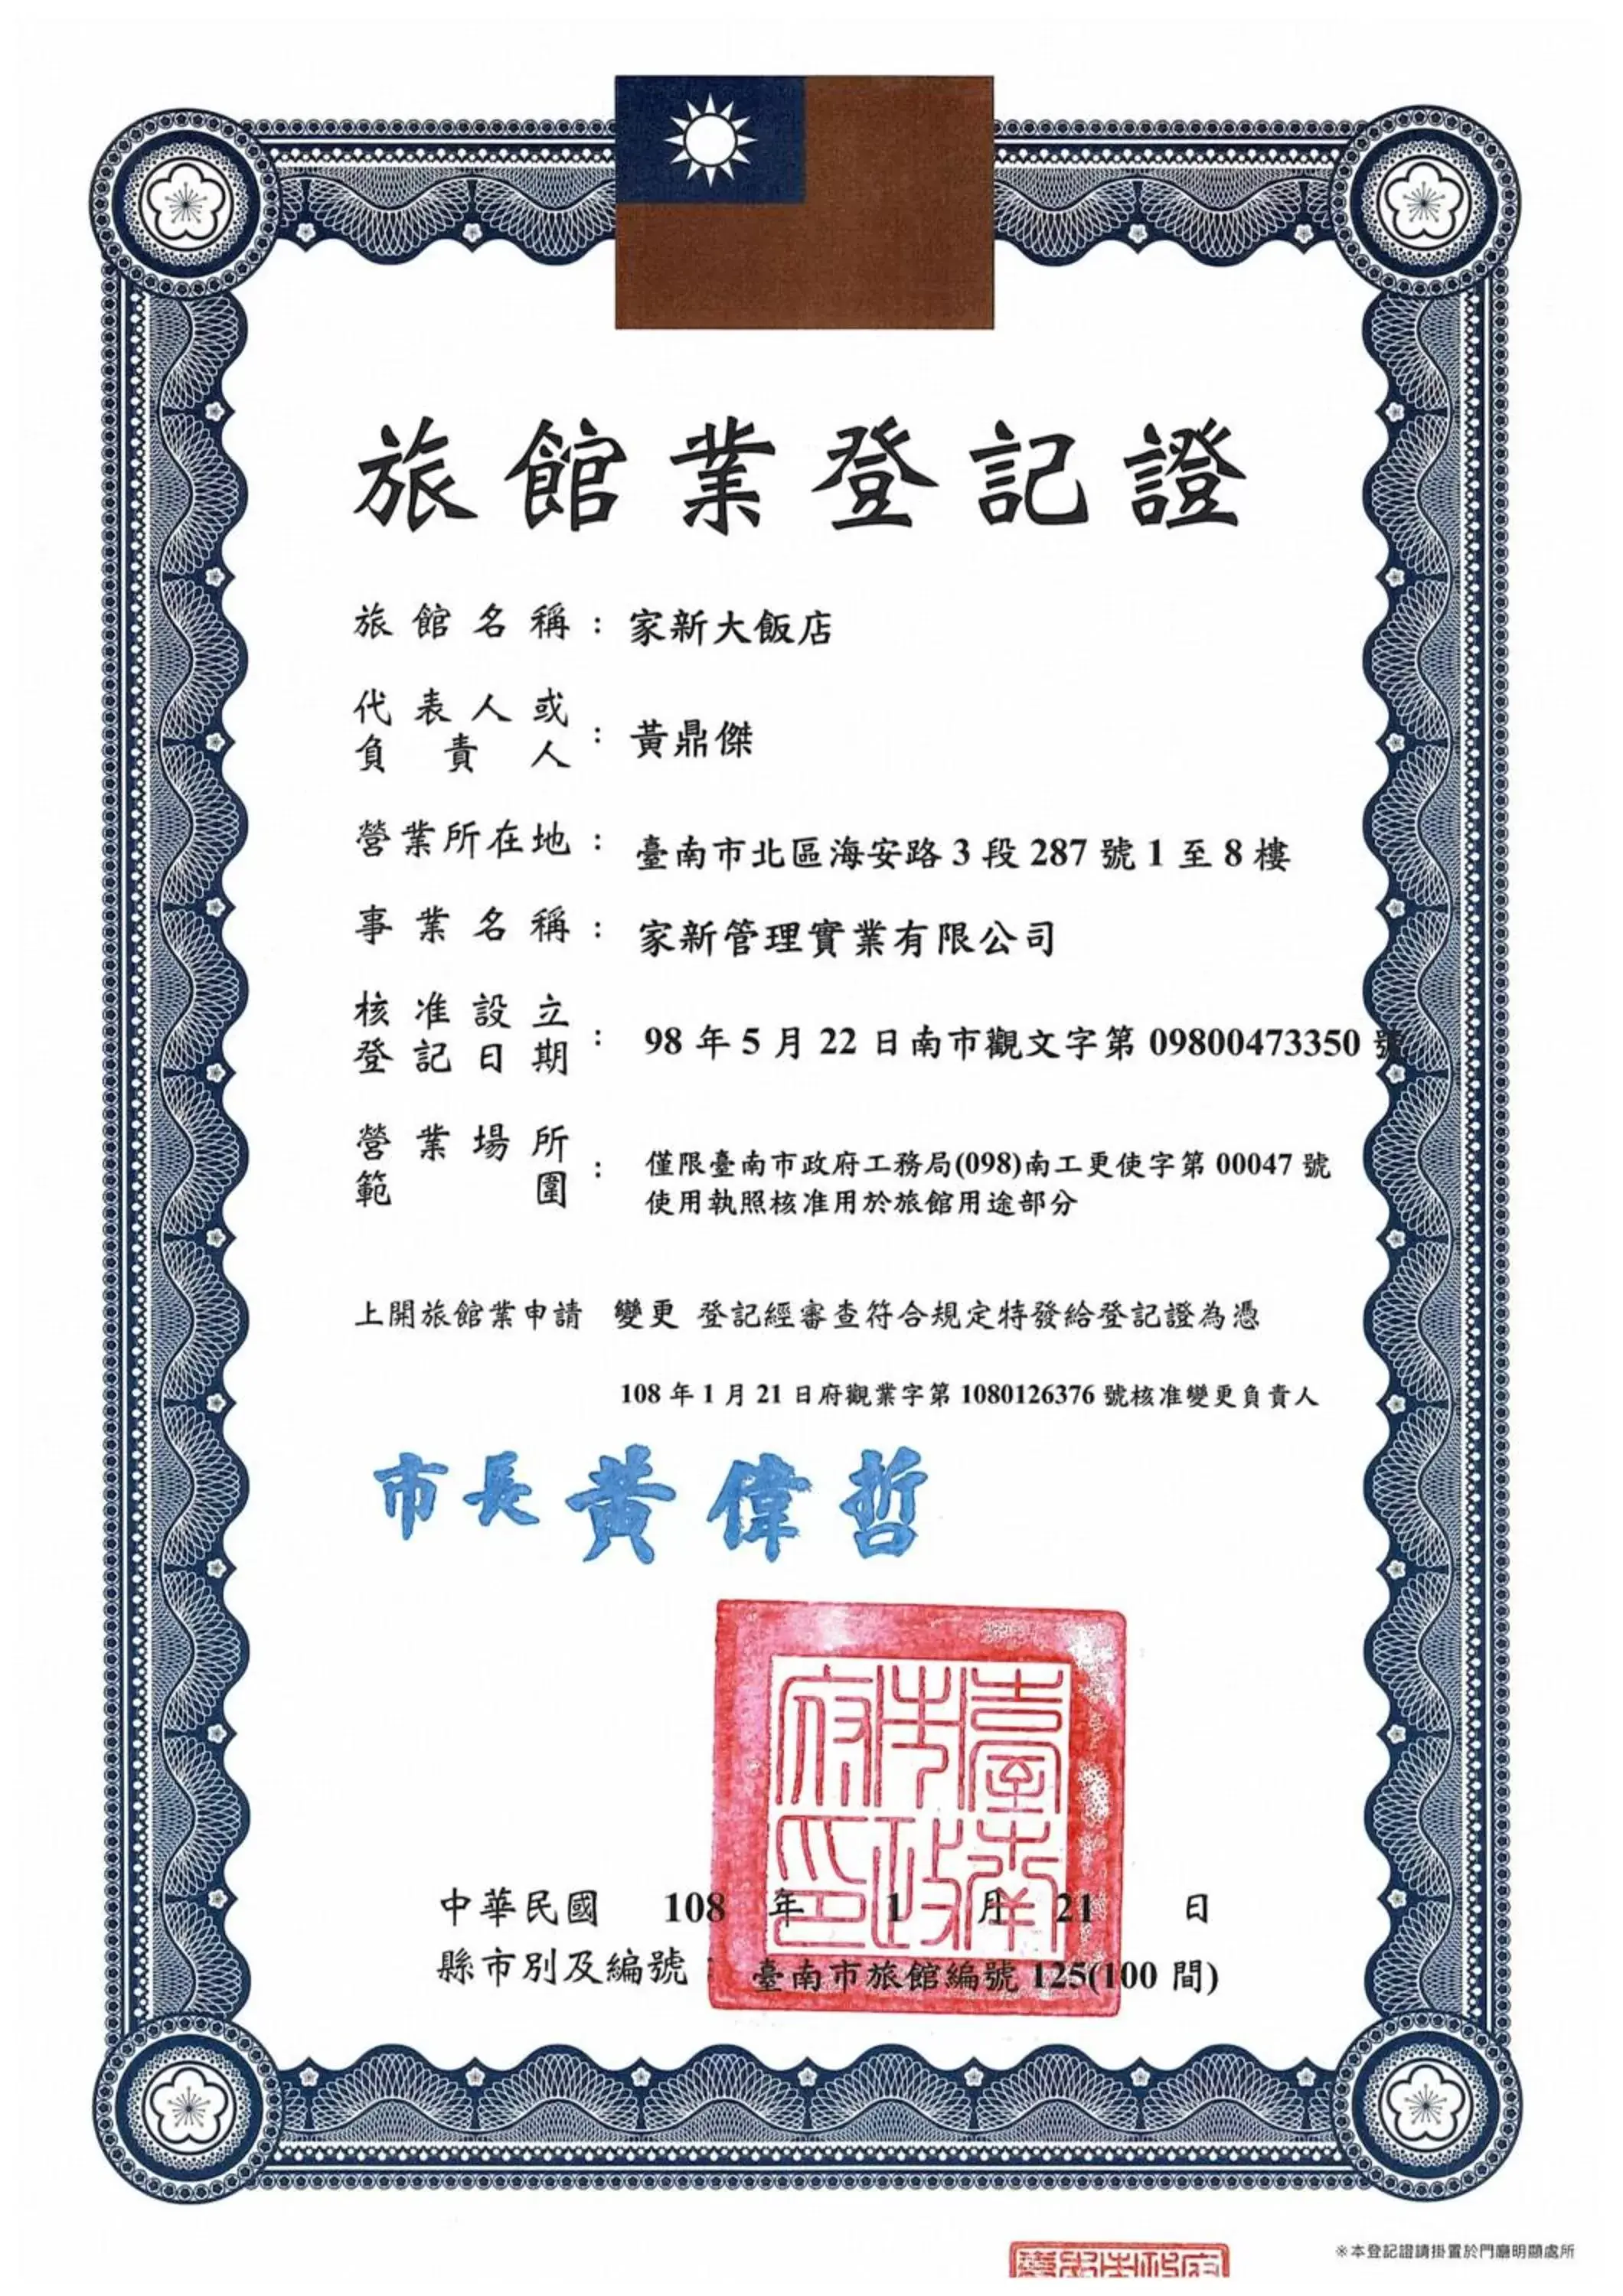 Logo/Certificate/Sign, Floor Plan in Jia Hsin Garden Hotel